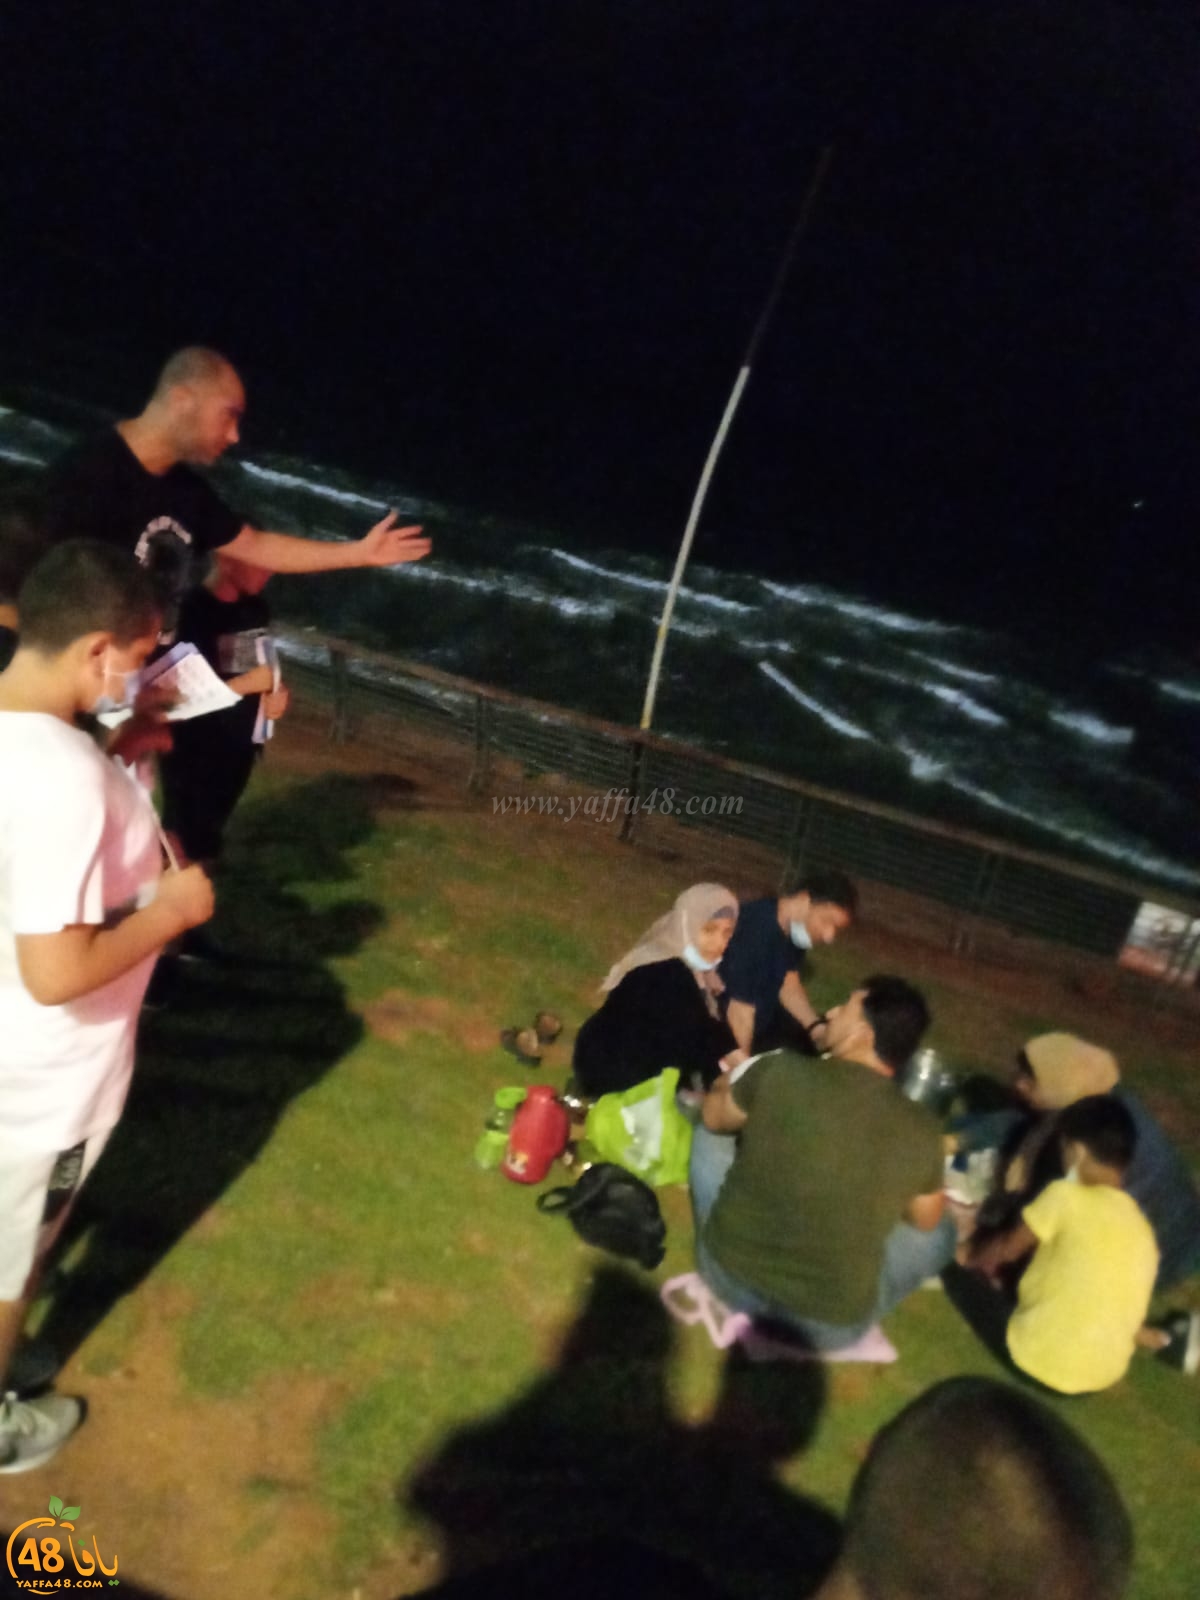  يافا: توزيع منشورات توعوية من مخاطر البحر والسباحة على النزلاء في شواطئ المدينة